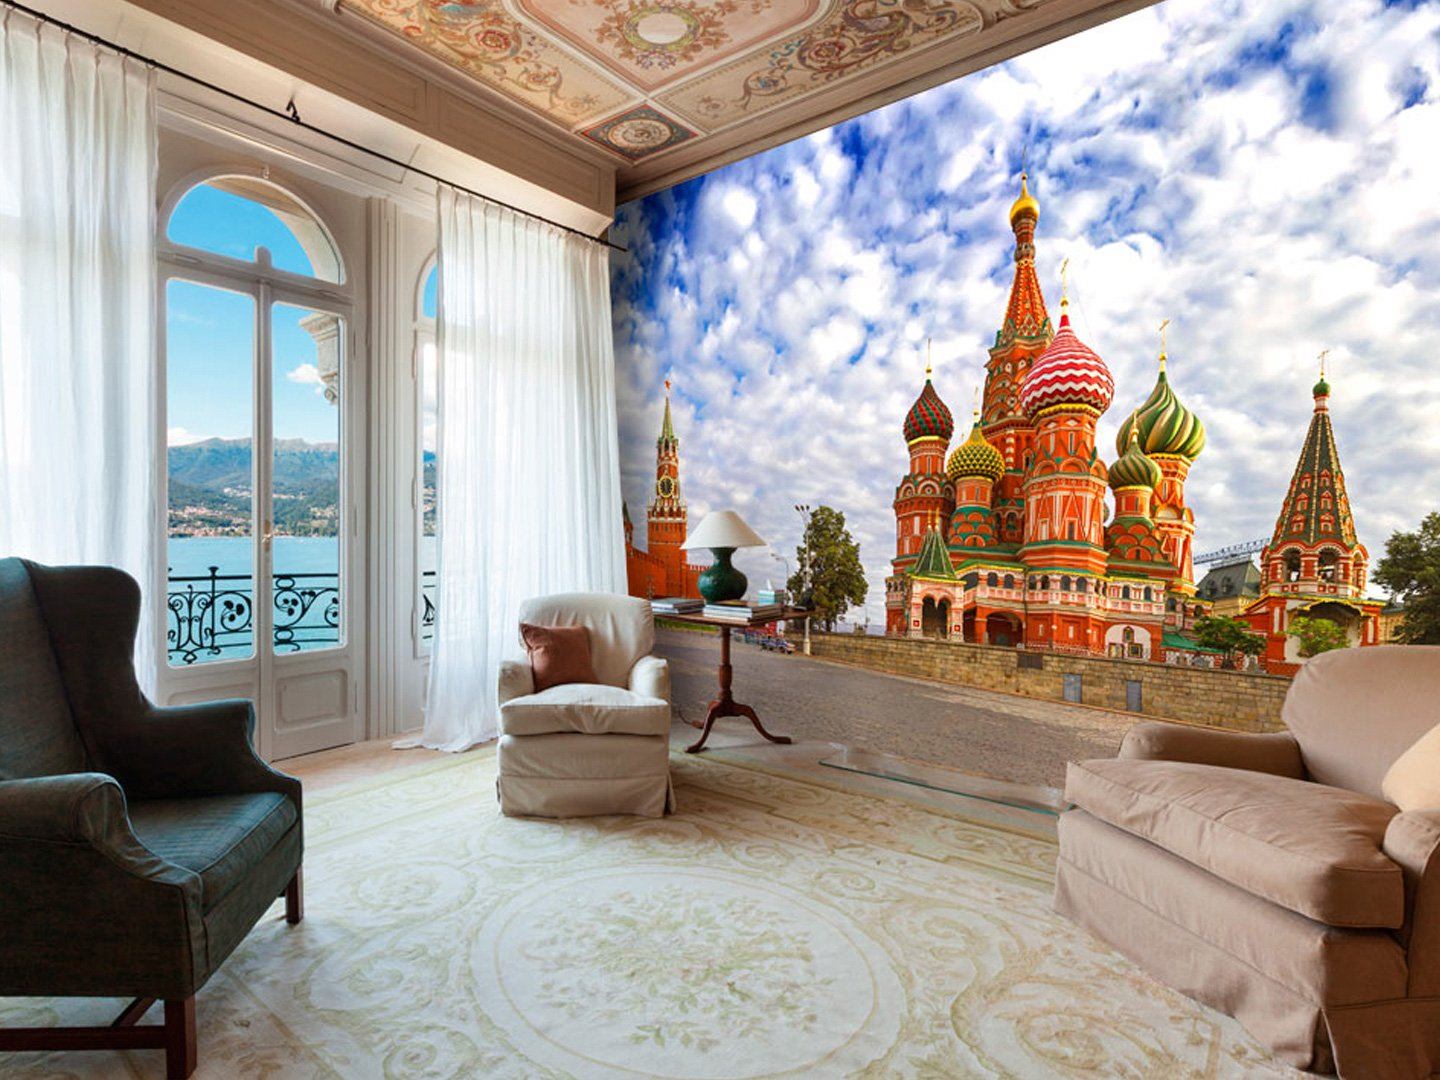 Квартира с видом на кремль. Шикарные квартиры с видом на Кремль. Квартира с террасой с видом на Кремль. Квартира мечты с видом на Кремль.